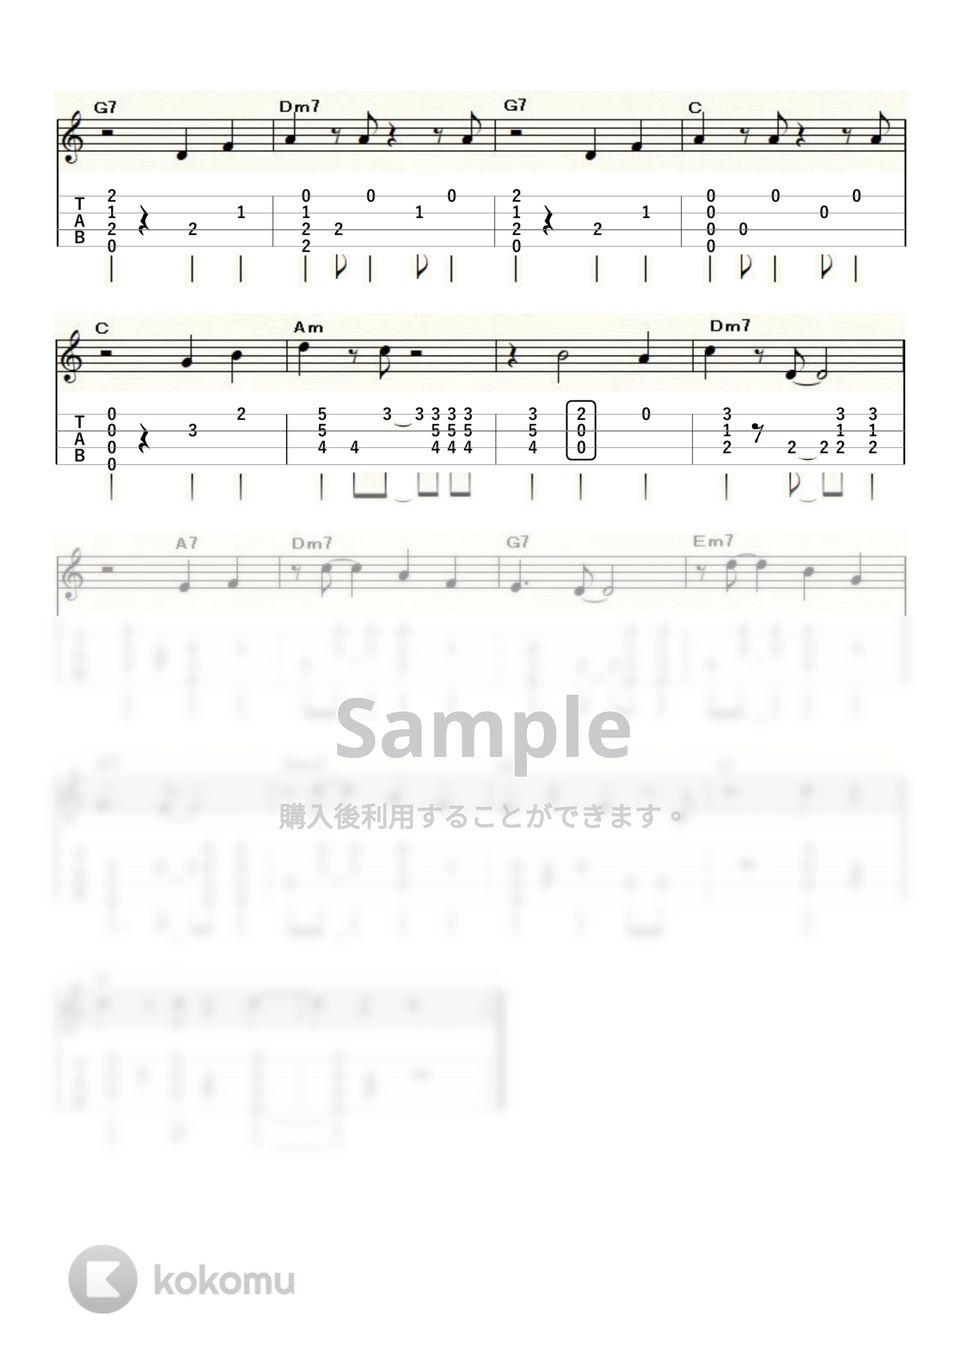 ルイ・アームストロング - Mack the Knife (ｳｸﾚﾚｿﾛ / High-G・Low-G / 中級) by ukulelepapa